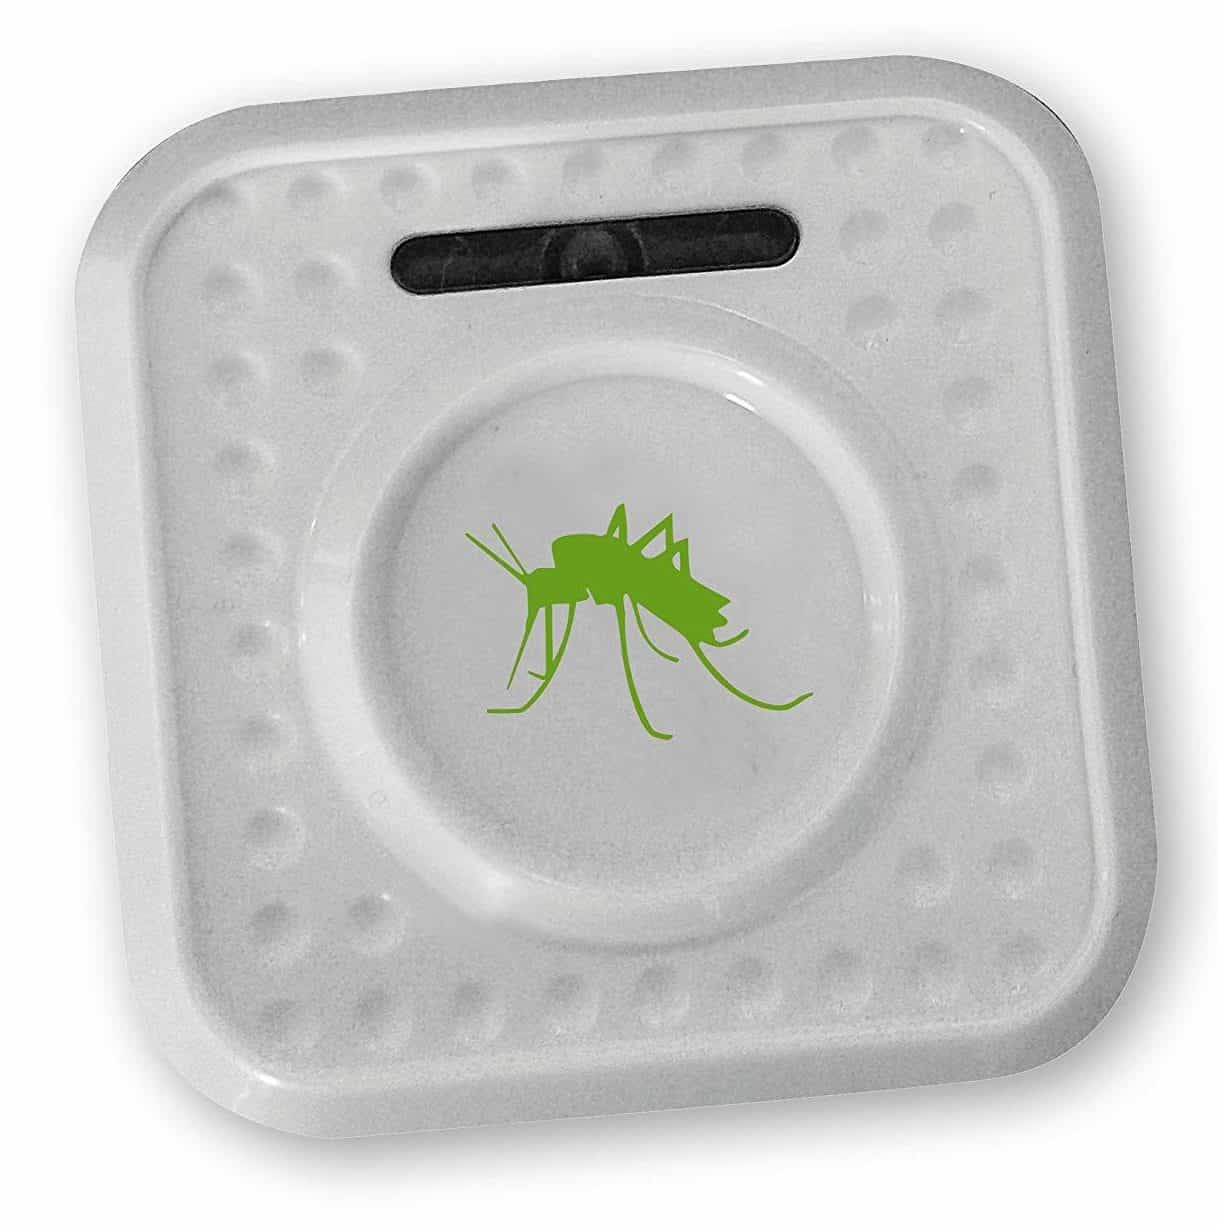 Anti Moustiques Insectes Prise Electrique Ultra Sons Non Toxique Pas Odeur Fr